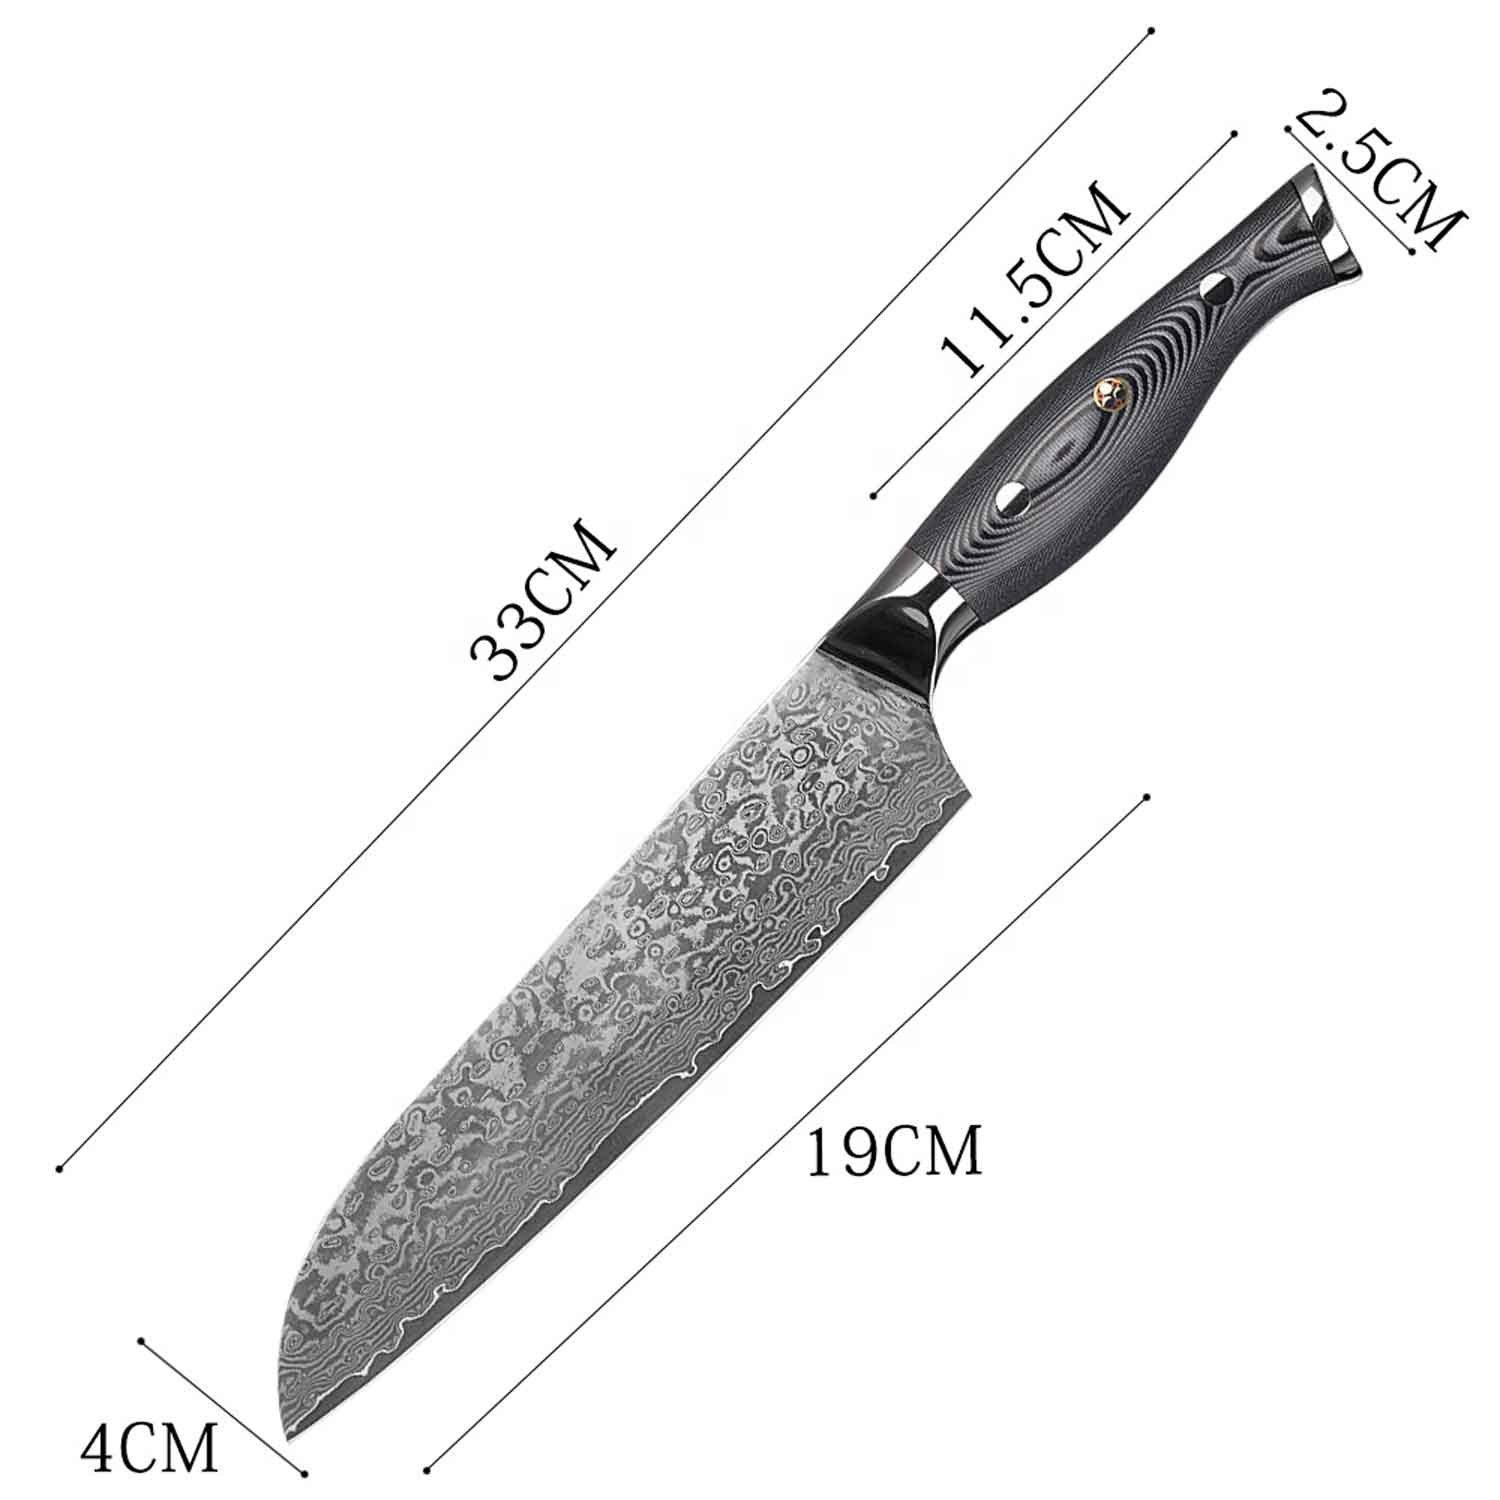 Damastmesser Santokumesser Muxel Carbon Kochmesser Damast-Klinge Küchenmesser Messer